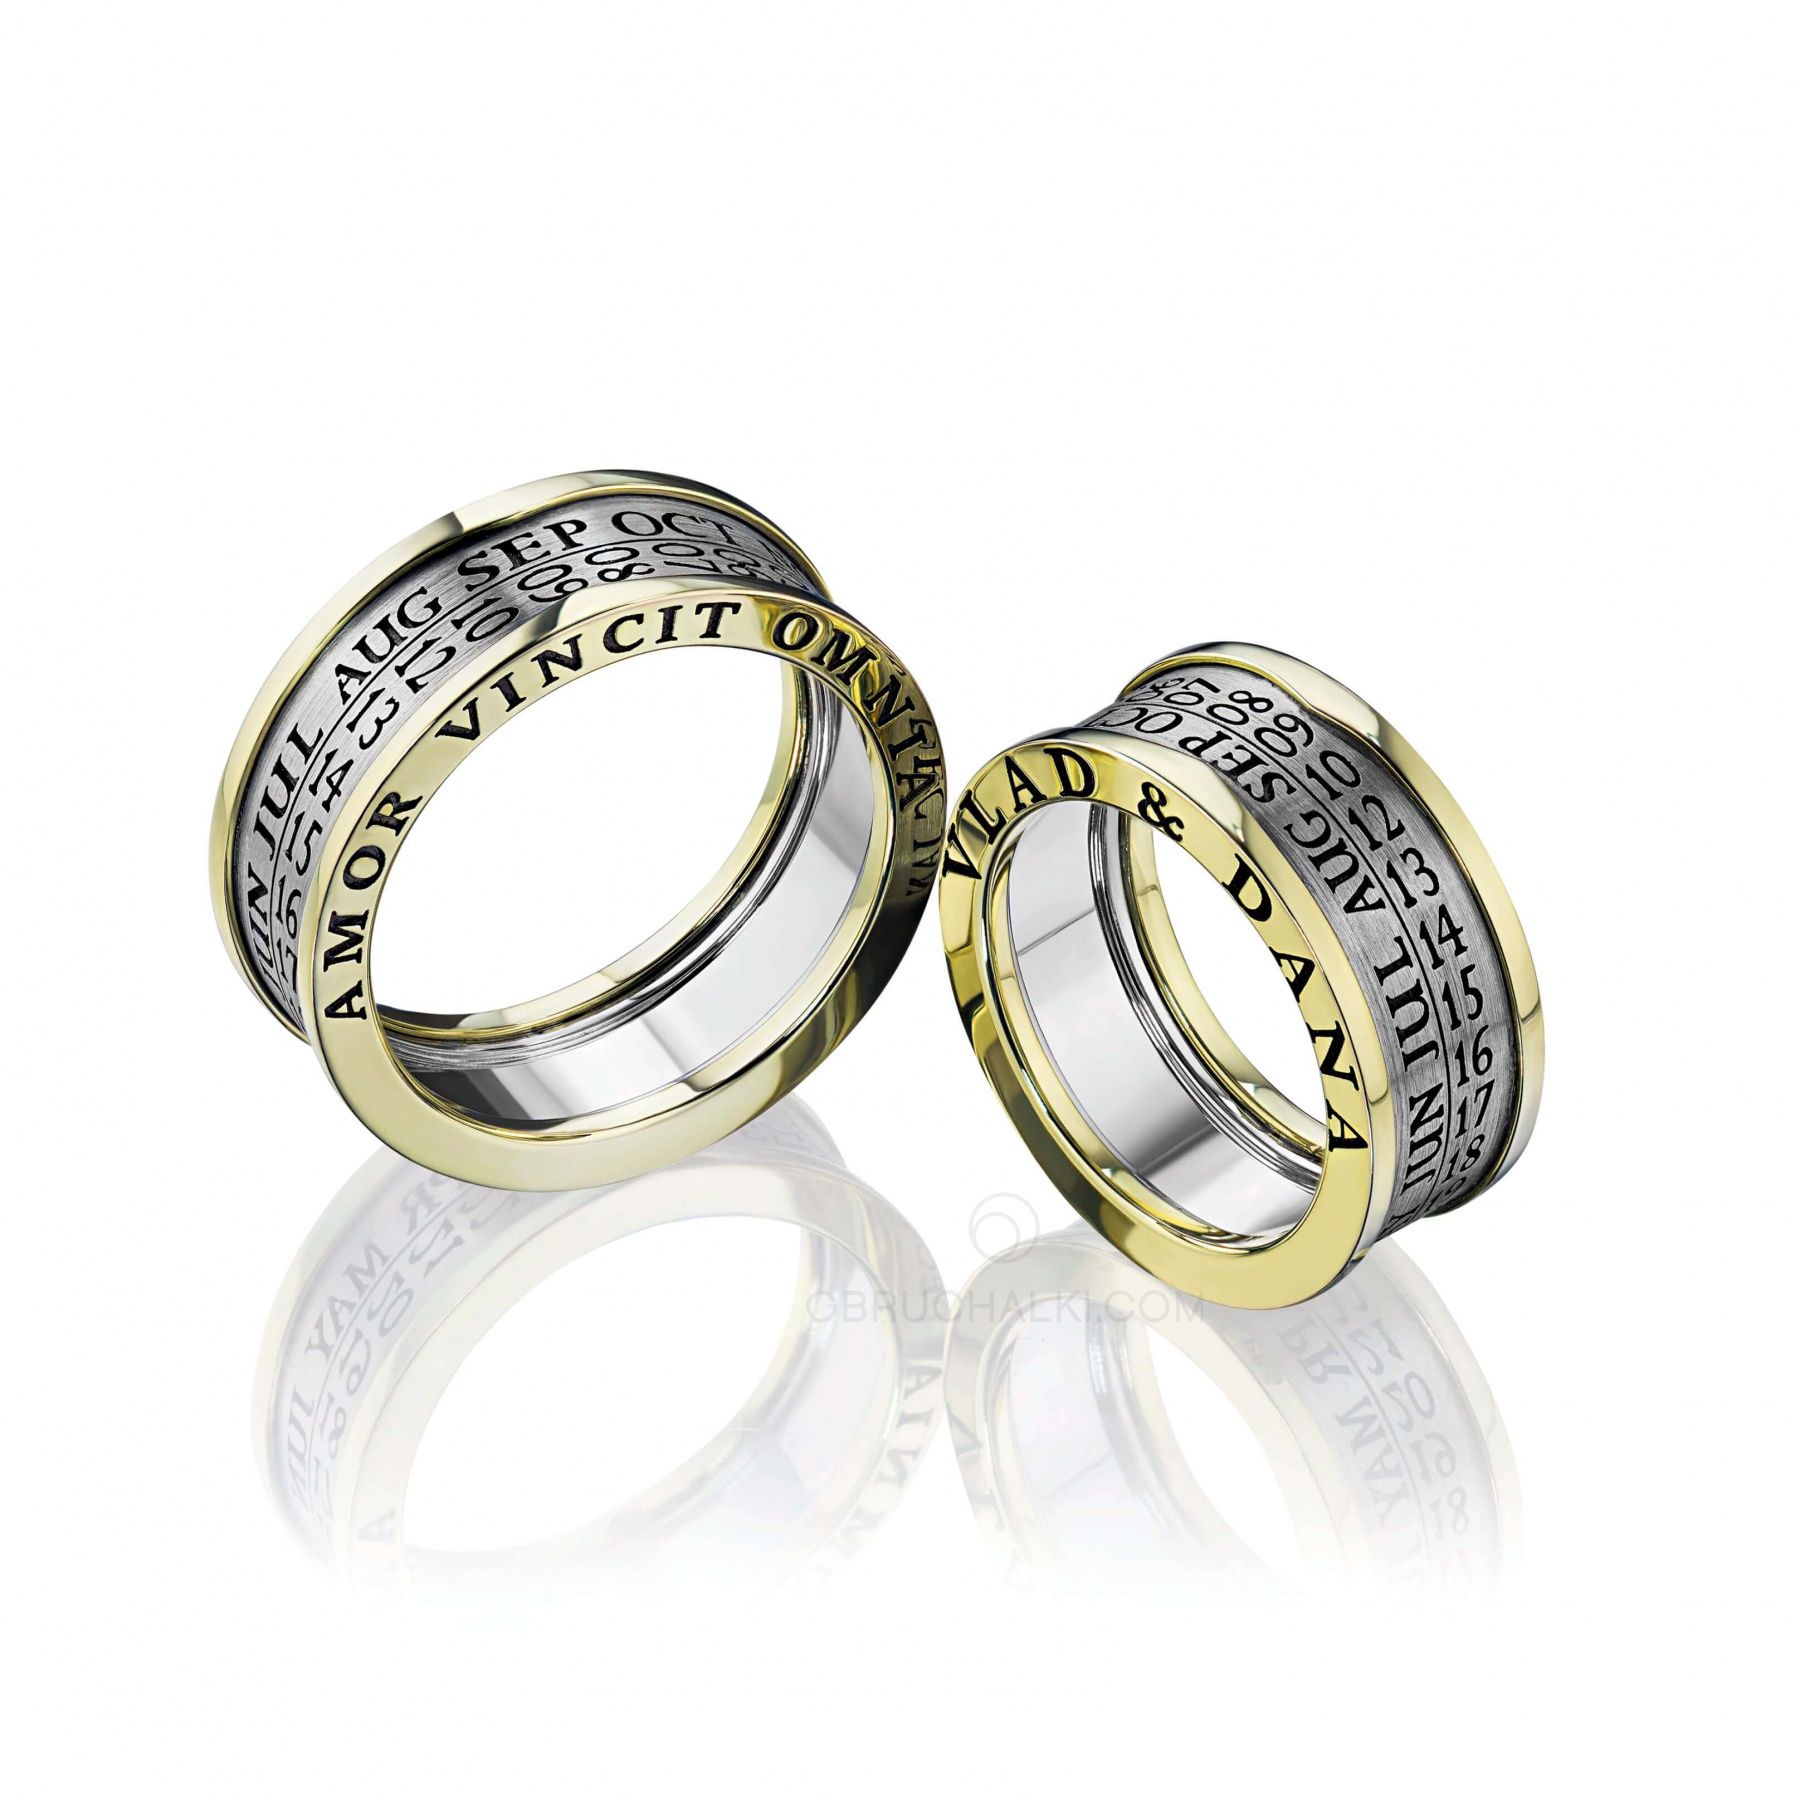 Парные обручальные кольца с датой CALENDAR на заказ из белого и желтого золота, серебра, платины или своего металла